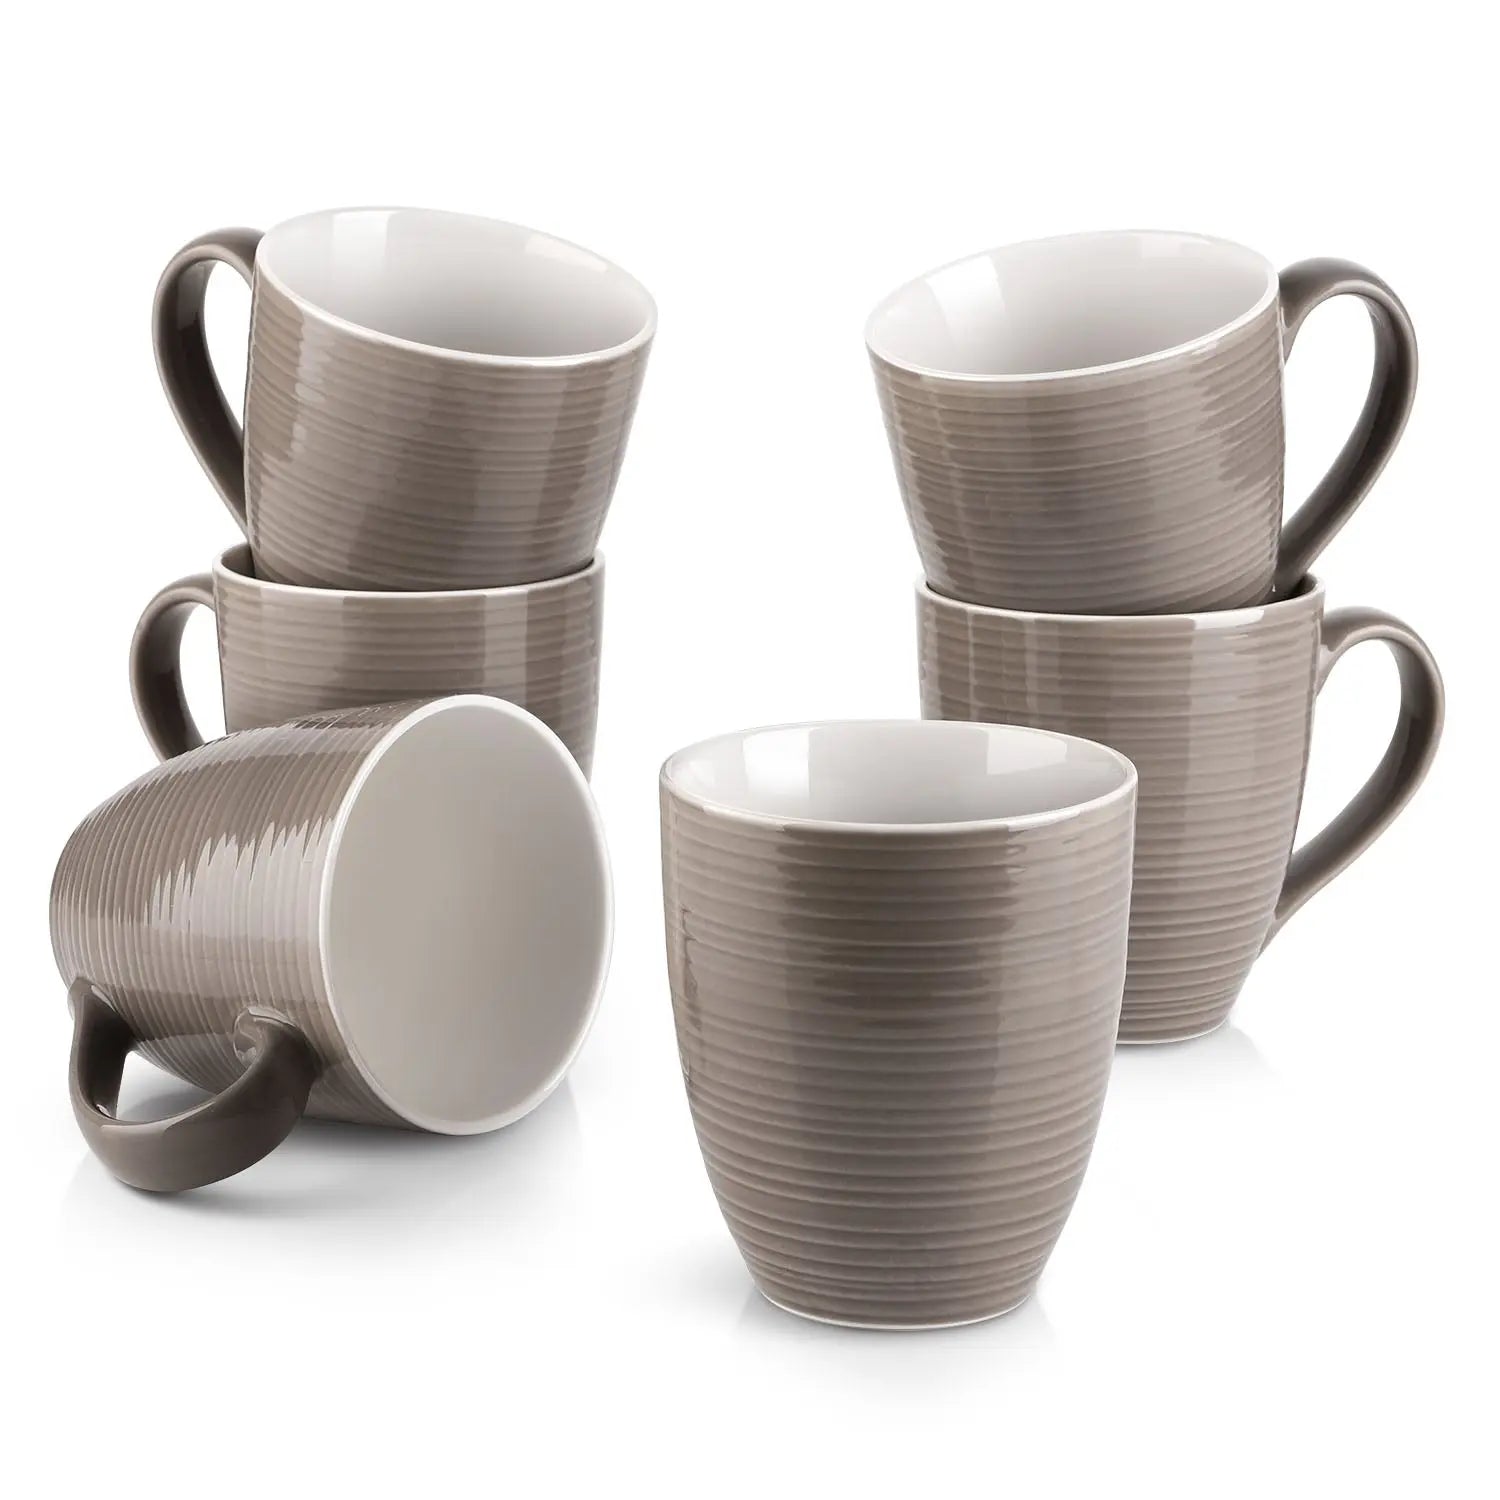 https://dowan.com/cdn/shop/files/17-Oz-Ceramic-Coffee-Mug-with-Handle----Set-of-6-Dowan-1690465140561_7d028e27-5e40-47d9-acaf-fe2f9990c4c0.jpg?v=1691141666